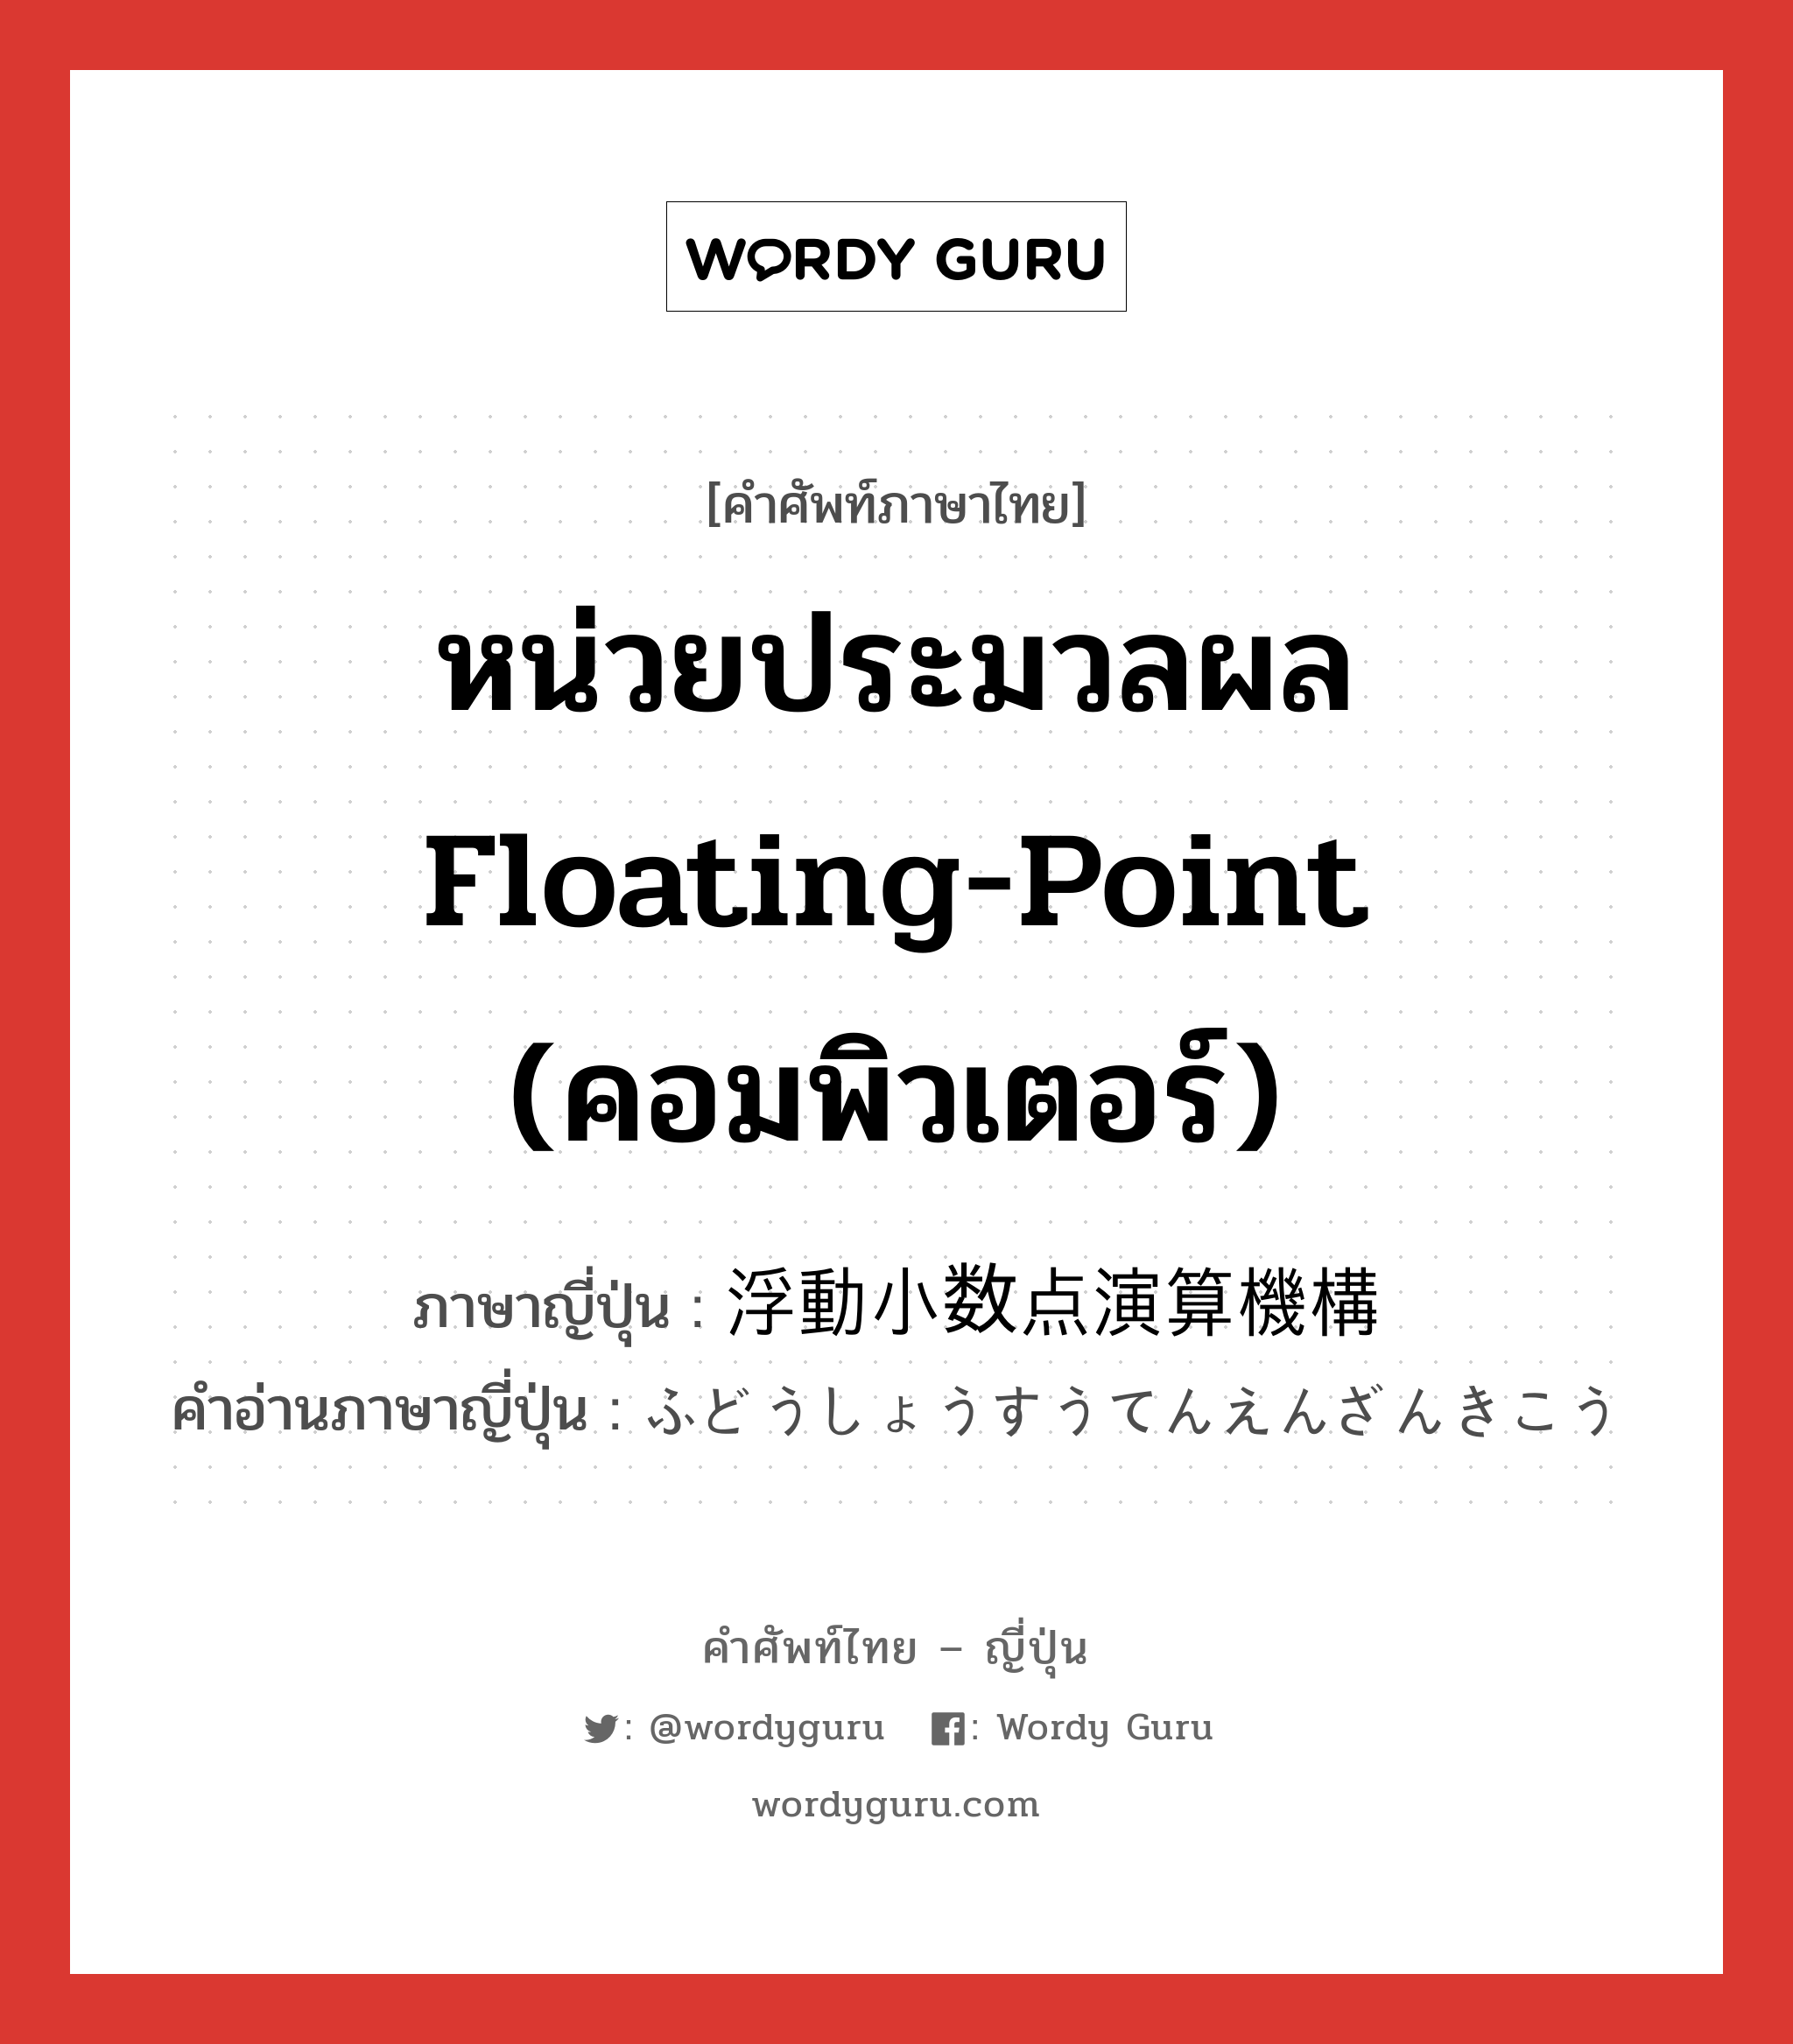 หน่วยประมวลผล floating-point (คอมพิวเตอร์) ภาษาญี่ปุ่นคืออะไร, คำศัพท์ภาษาไทย - ญี่ปุ่น หน่วยประมวลผล floating-point (คอมพิวเตอร์) ภาษาญี่ปุ่น 浮動小数点演算機構 คำอ่านภาษาญี่ปุ่น ふどうしょうすうてんえんざんきこう หมวด n หมวด n